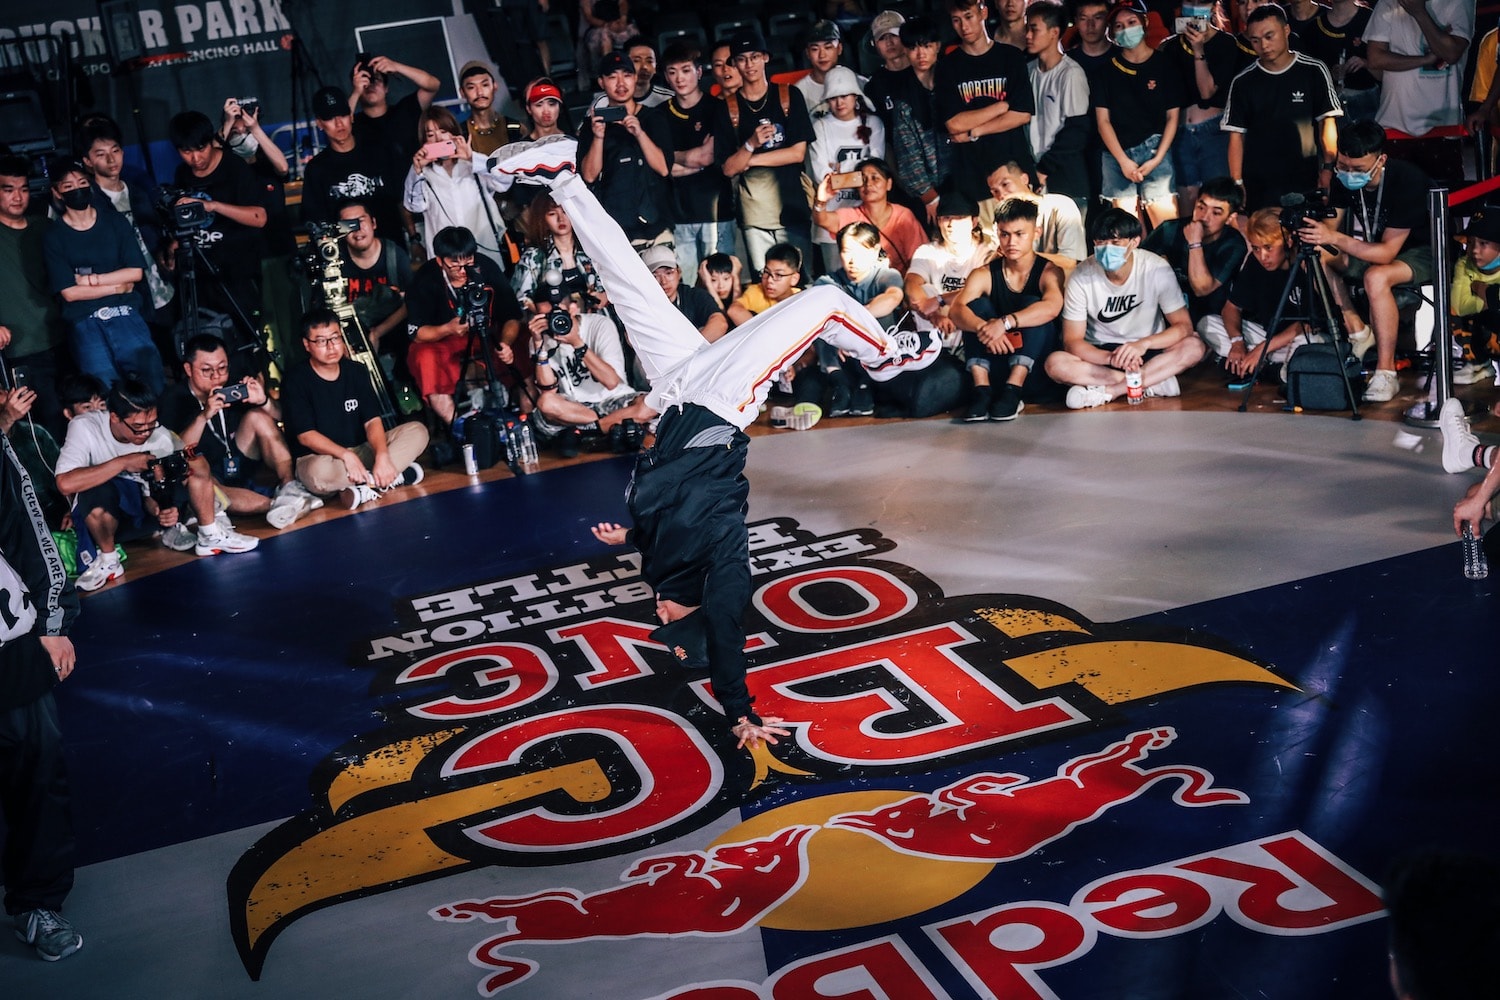 2020 年 Red Bull BC One China Exhibition Battle 完美落幕